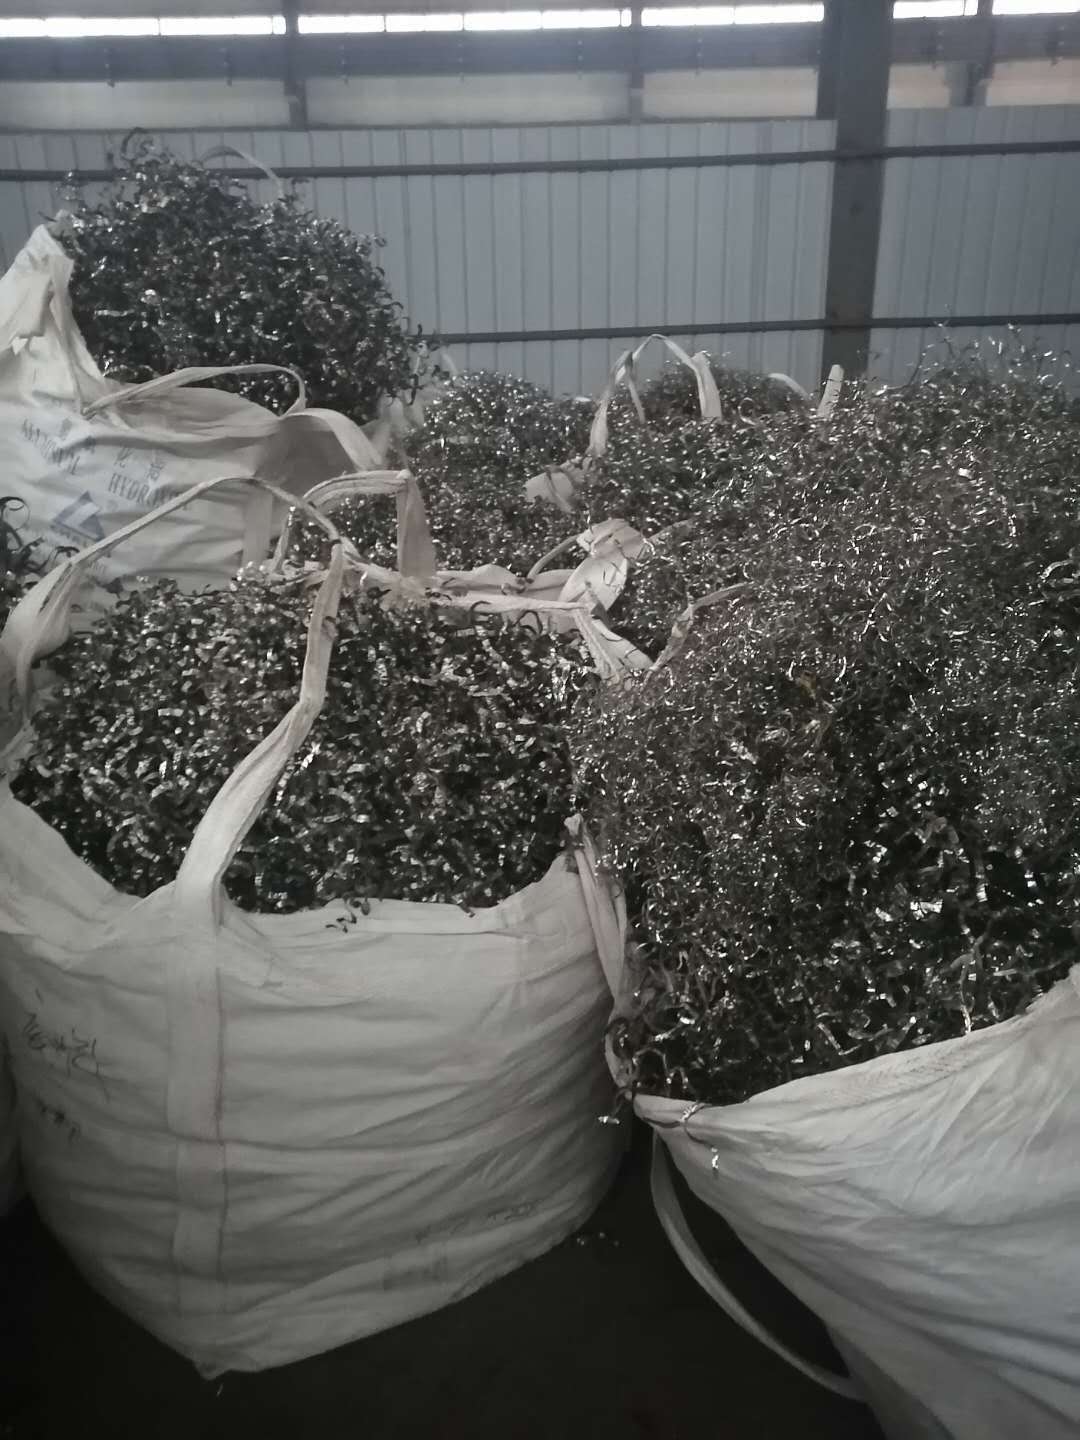 温州回收钛多少钱一斤